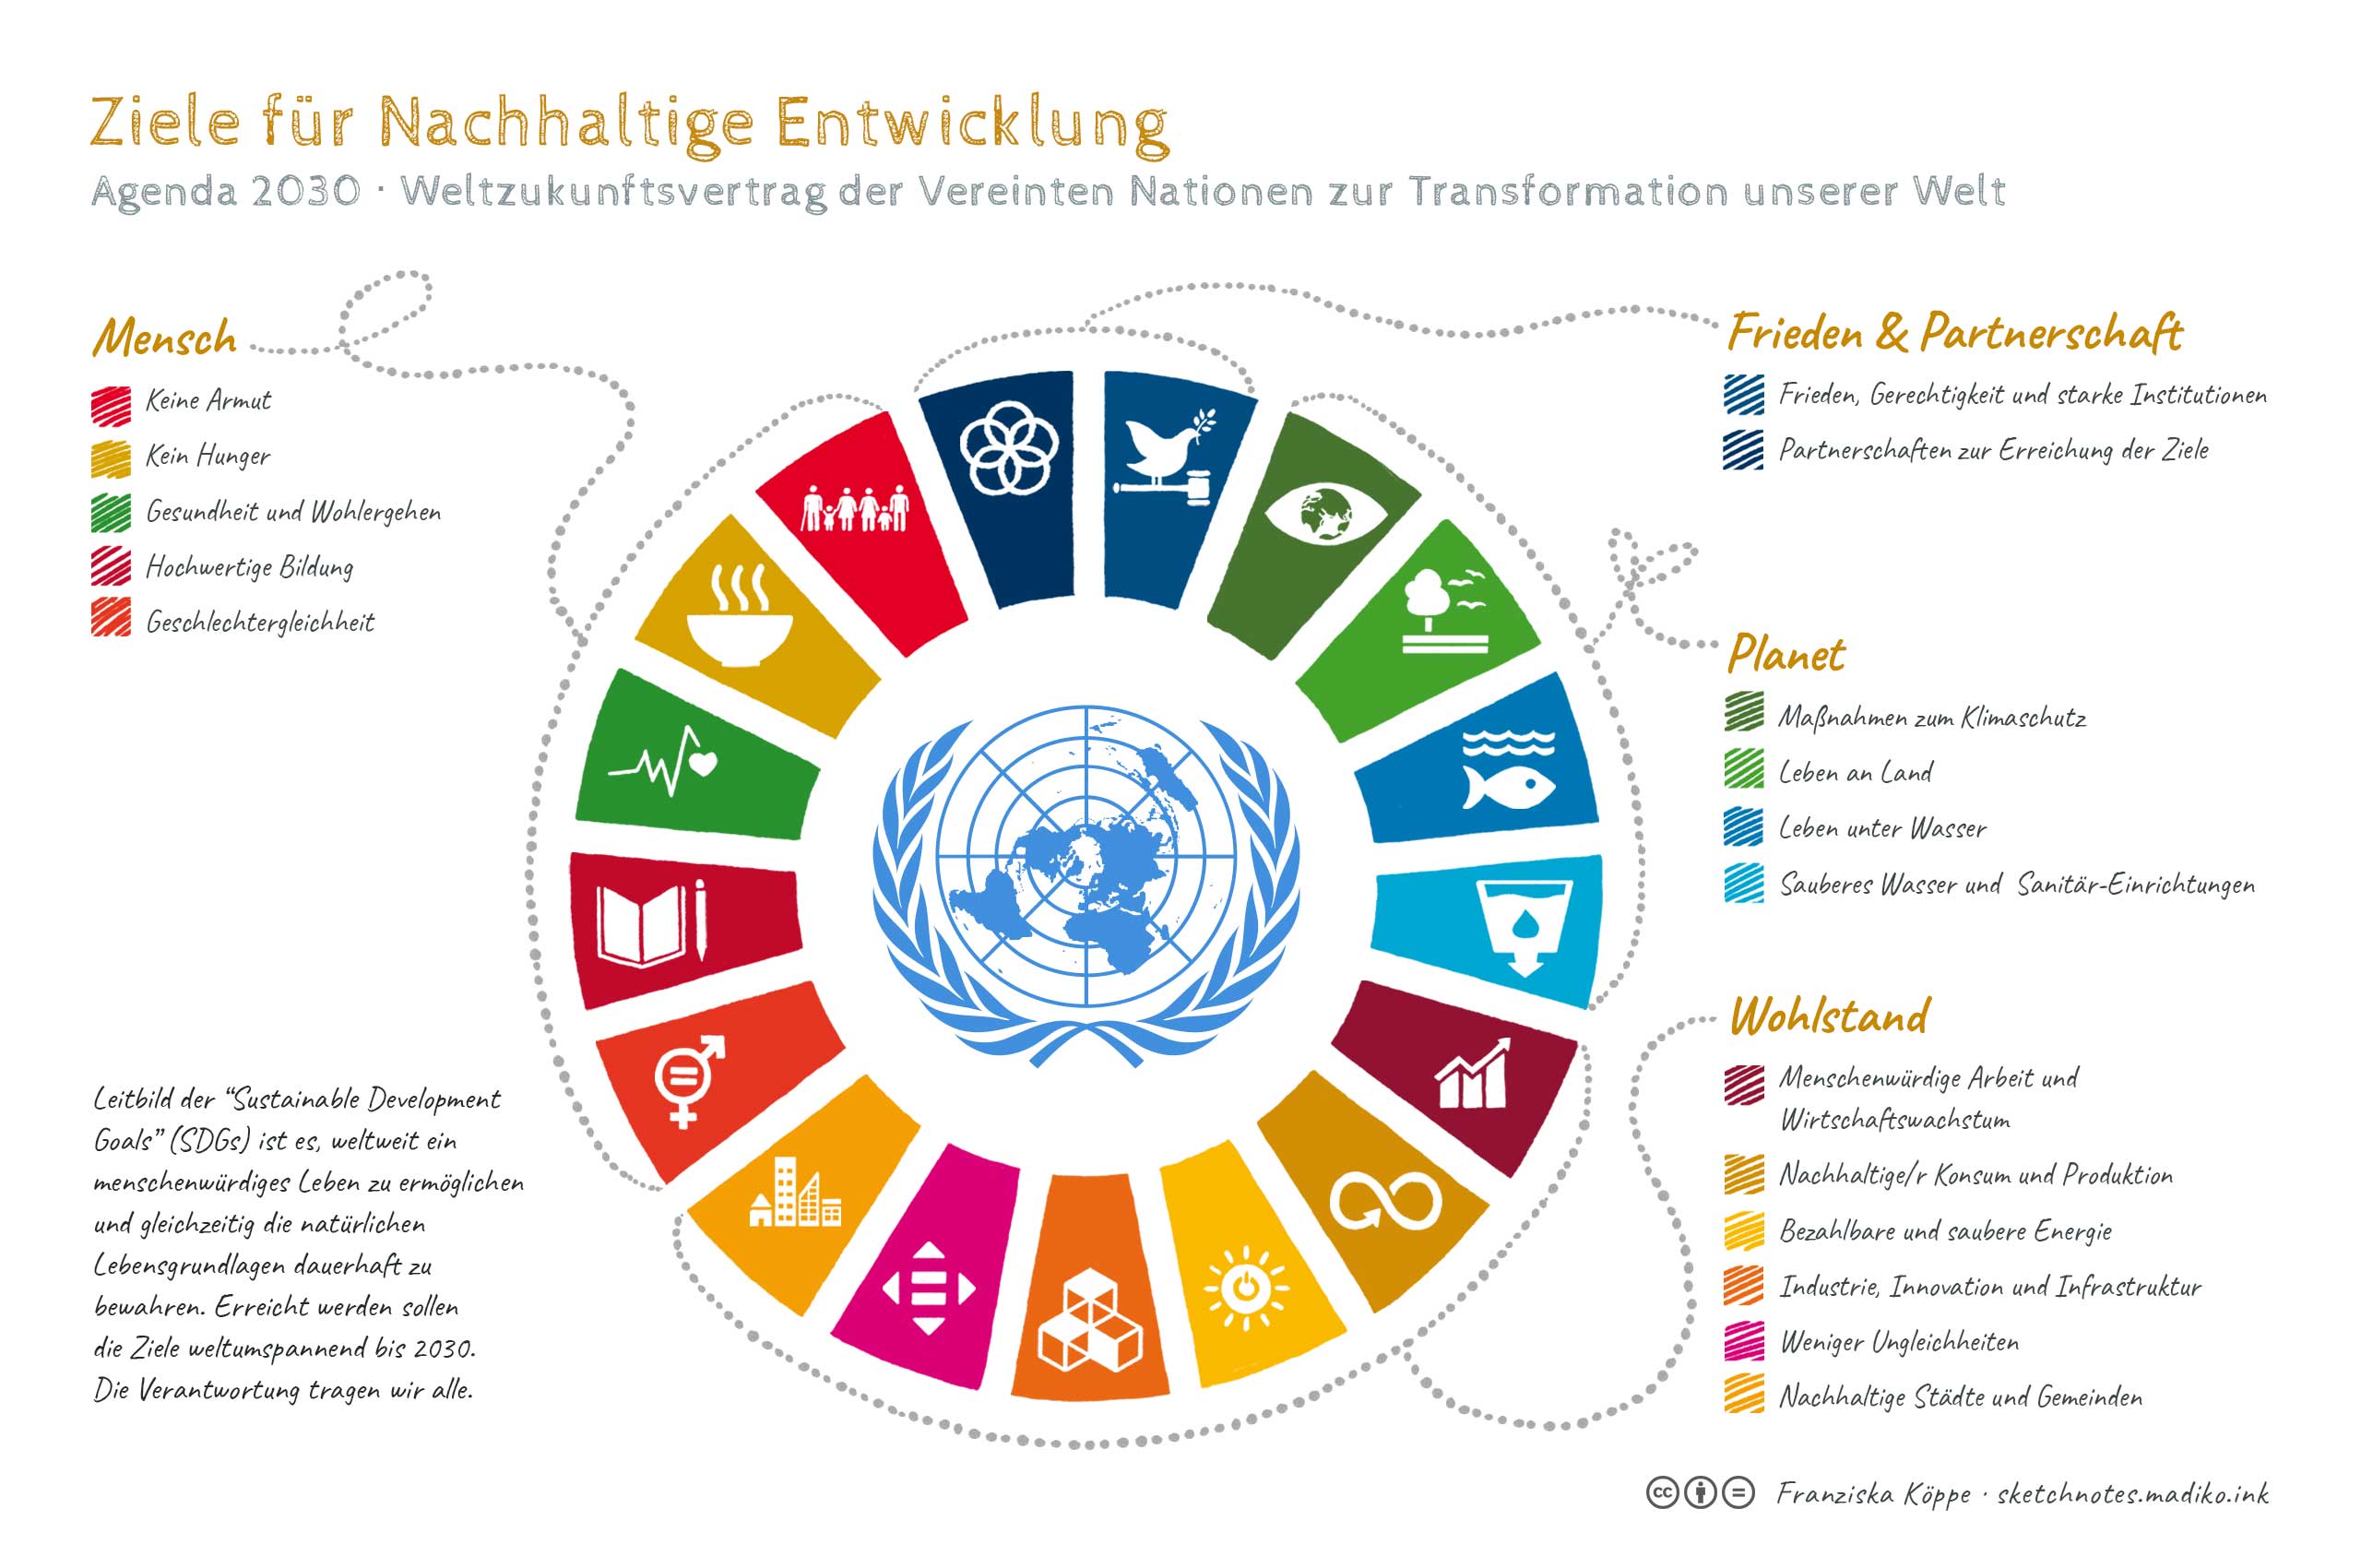 Ziele für Nachhaltige Entwicklung / Sustainable Development Goals / SDGs / Agenda 2030 - Sketchnotes